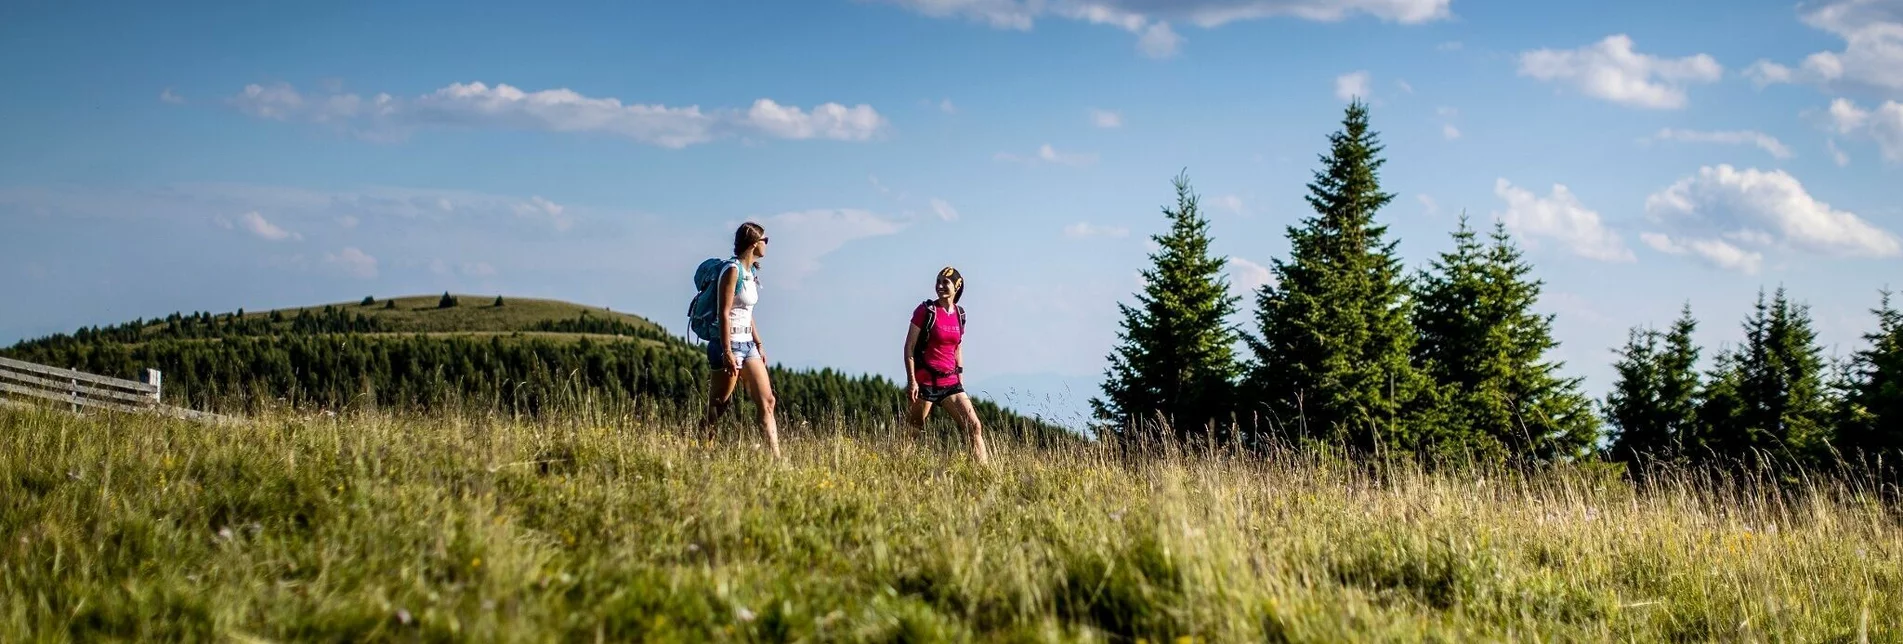 Wanderung 8-Gipfel Wanderung: Von der Frauenalpe zum Kreischberg - Touren-Impression #1 | © Tourismusverband Region Murau